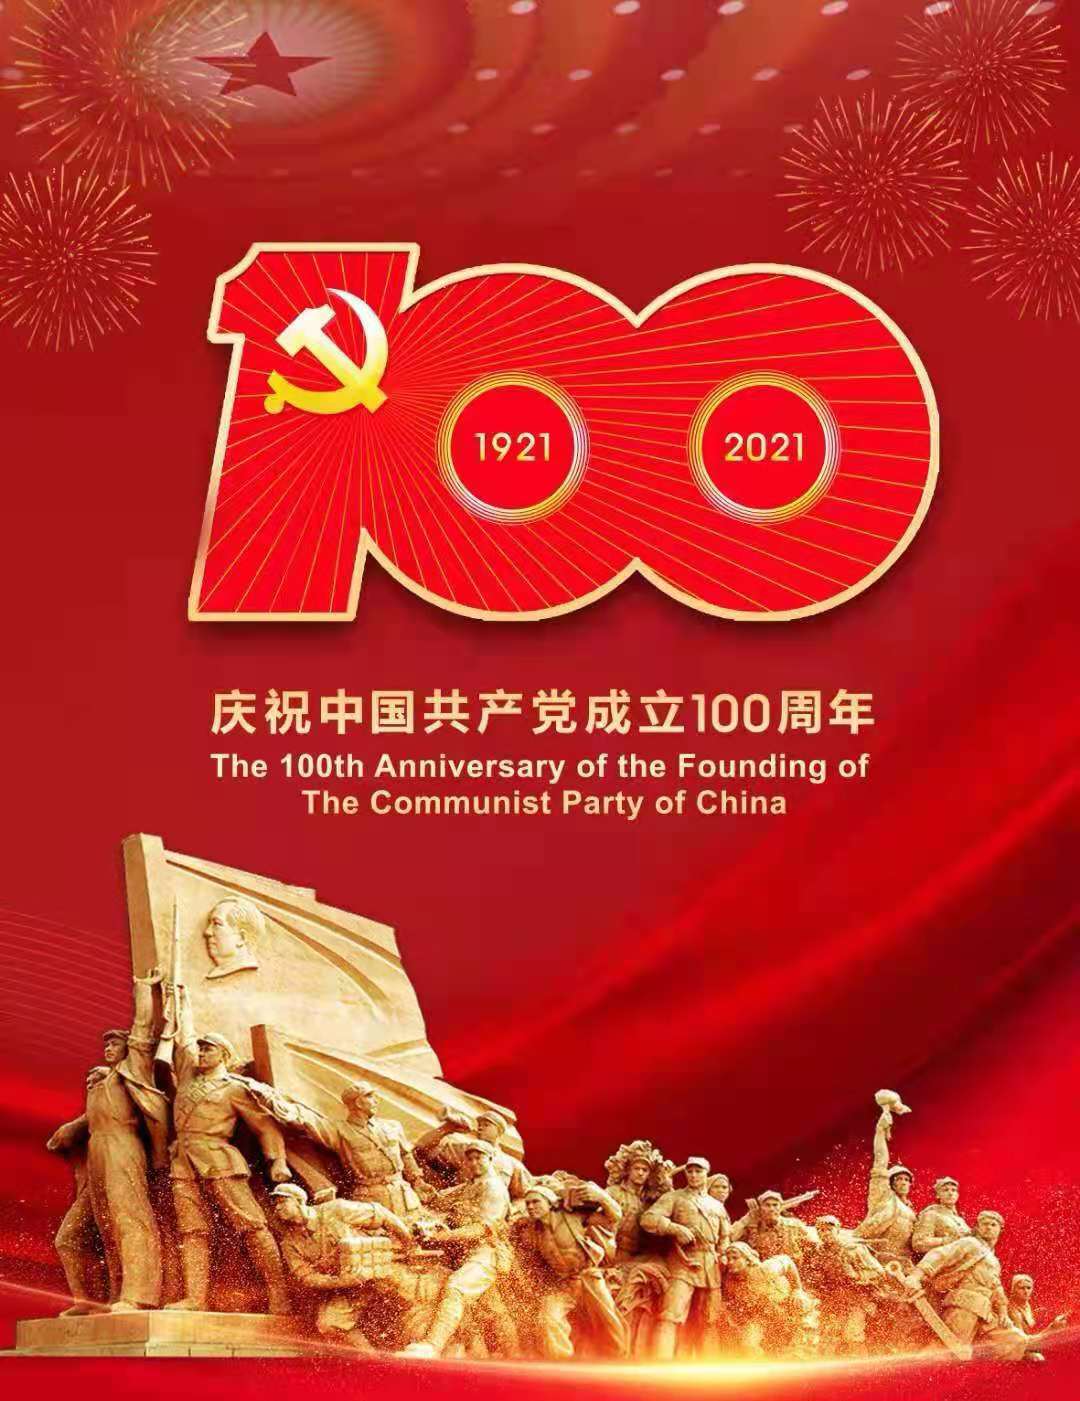 甘肃梅隆石材集团有限公司党支部组织 观看建党100周年大会